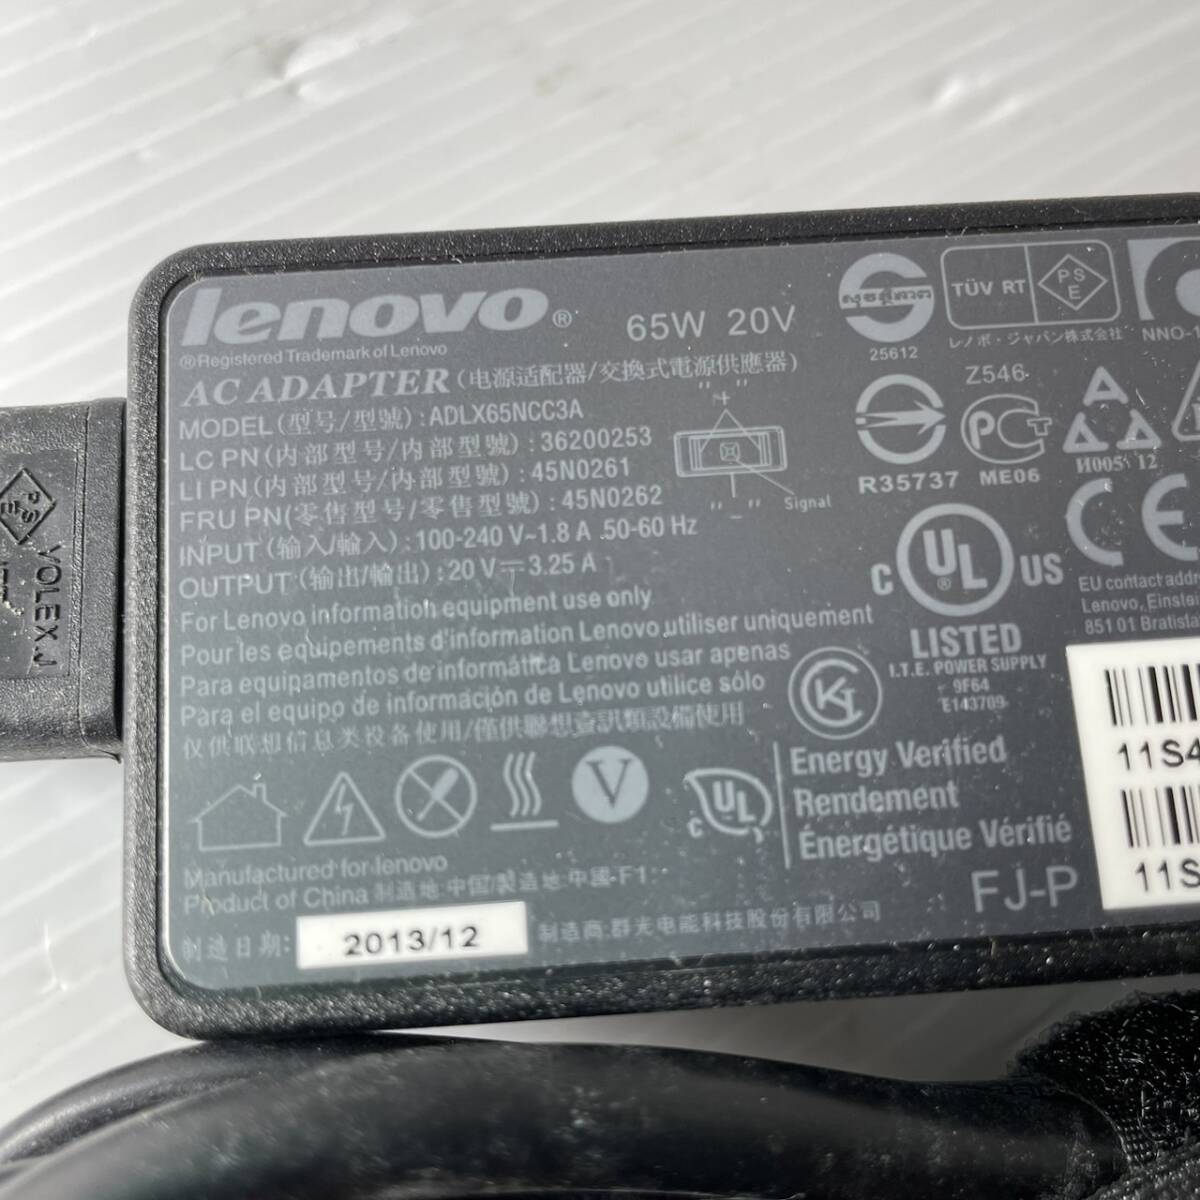 LENOVO оригинальный товар LENOVO 20V 3.25A AC адаптор включая доставку по цене безопасность!! после прибытия 1 месяцев гарантия 